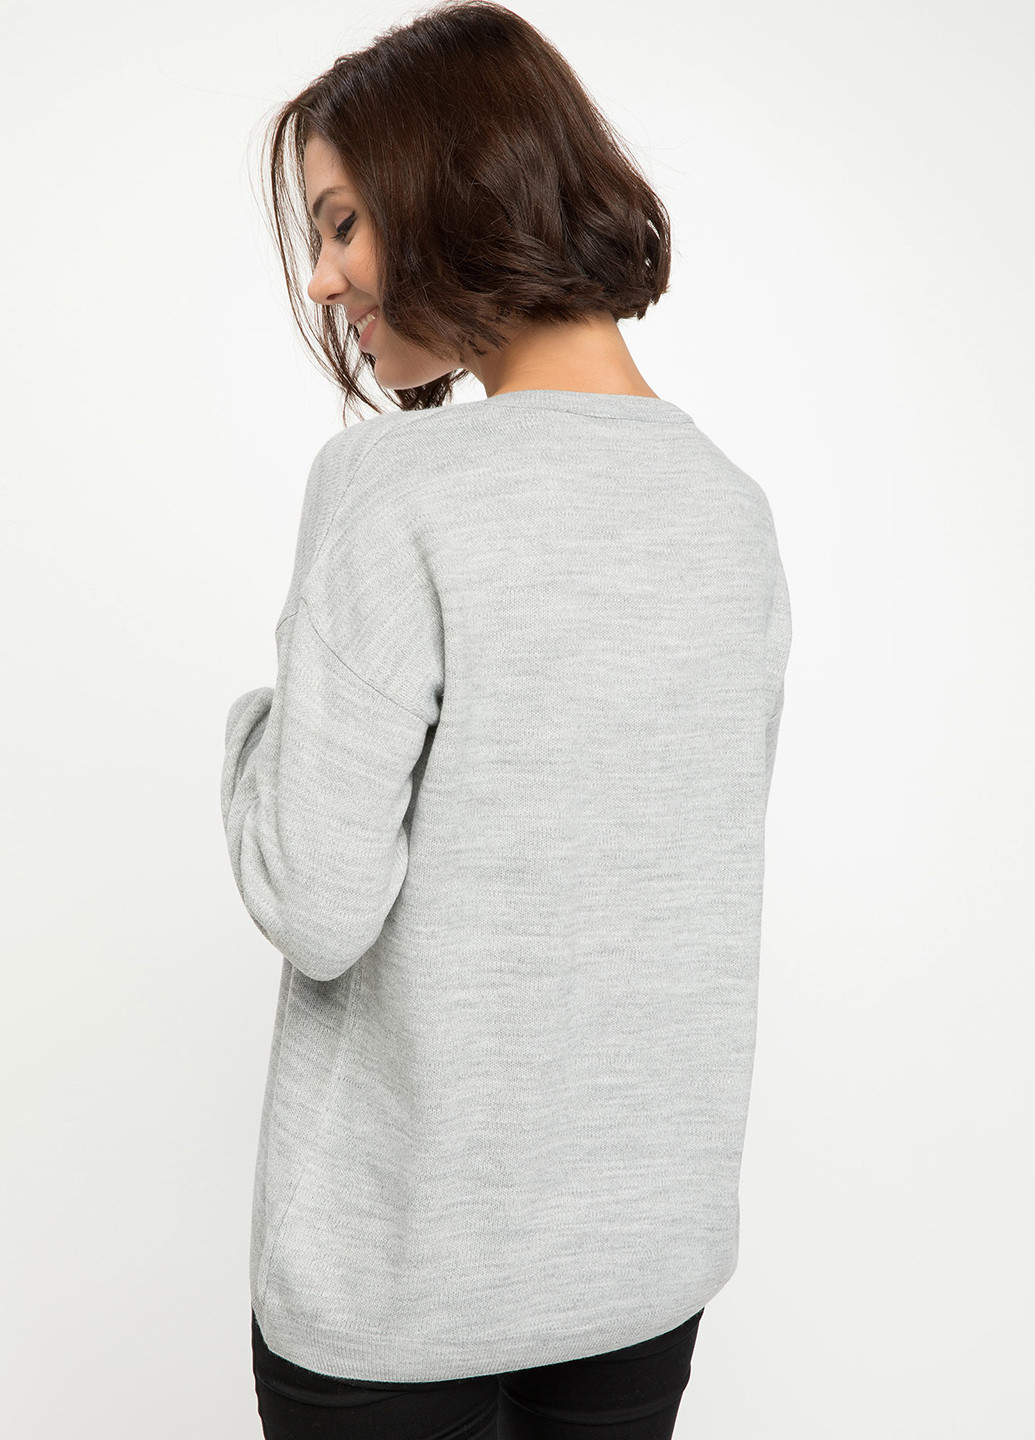 Серый демисезонный пуловер пуловер DeFacto